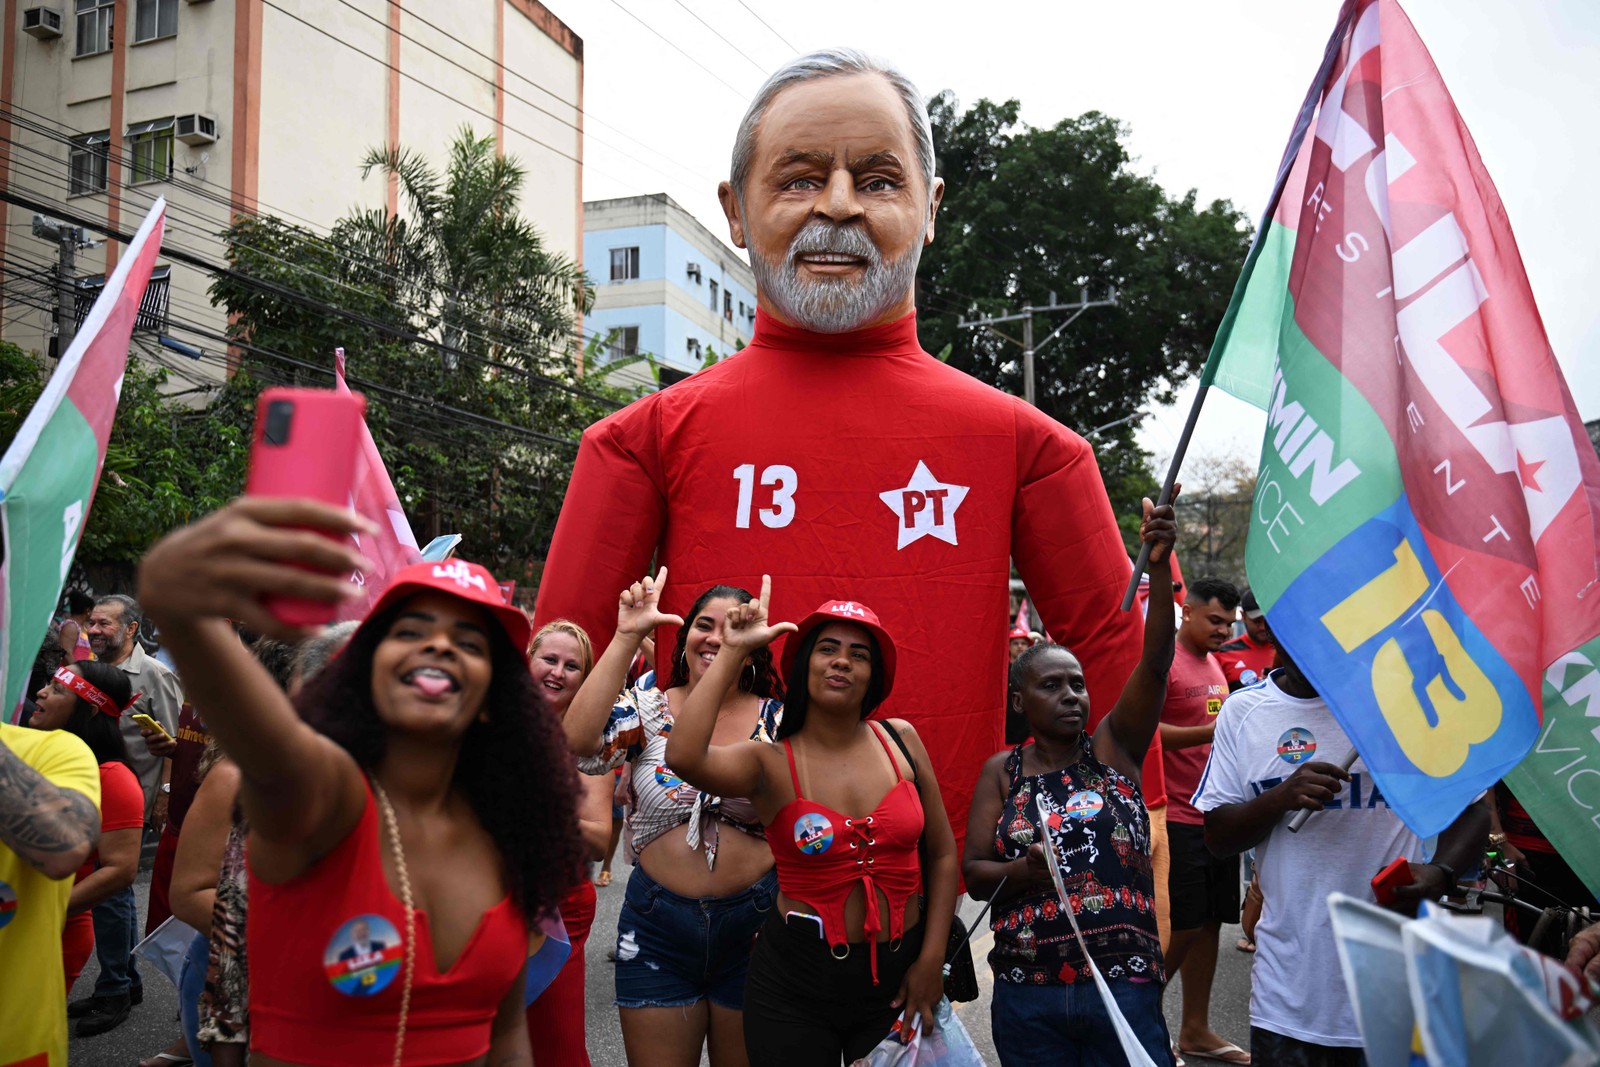 Jovens fazem selfie com boneco do ex-presidente e candidato à presidência Lula — Foto: Carl de Souza/AFP